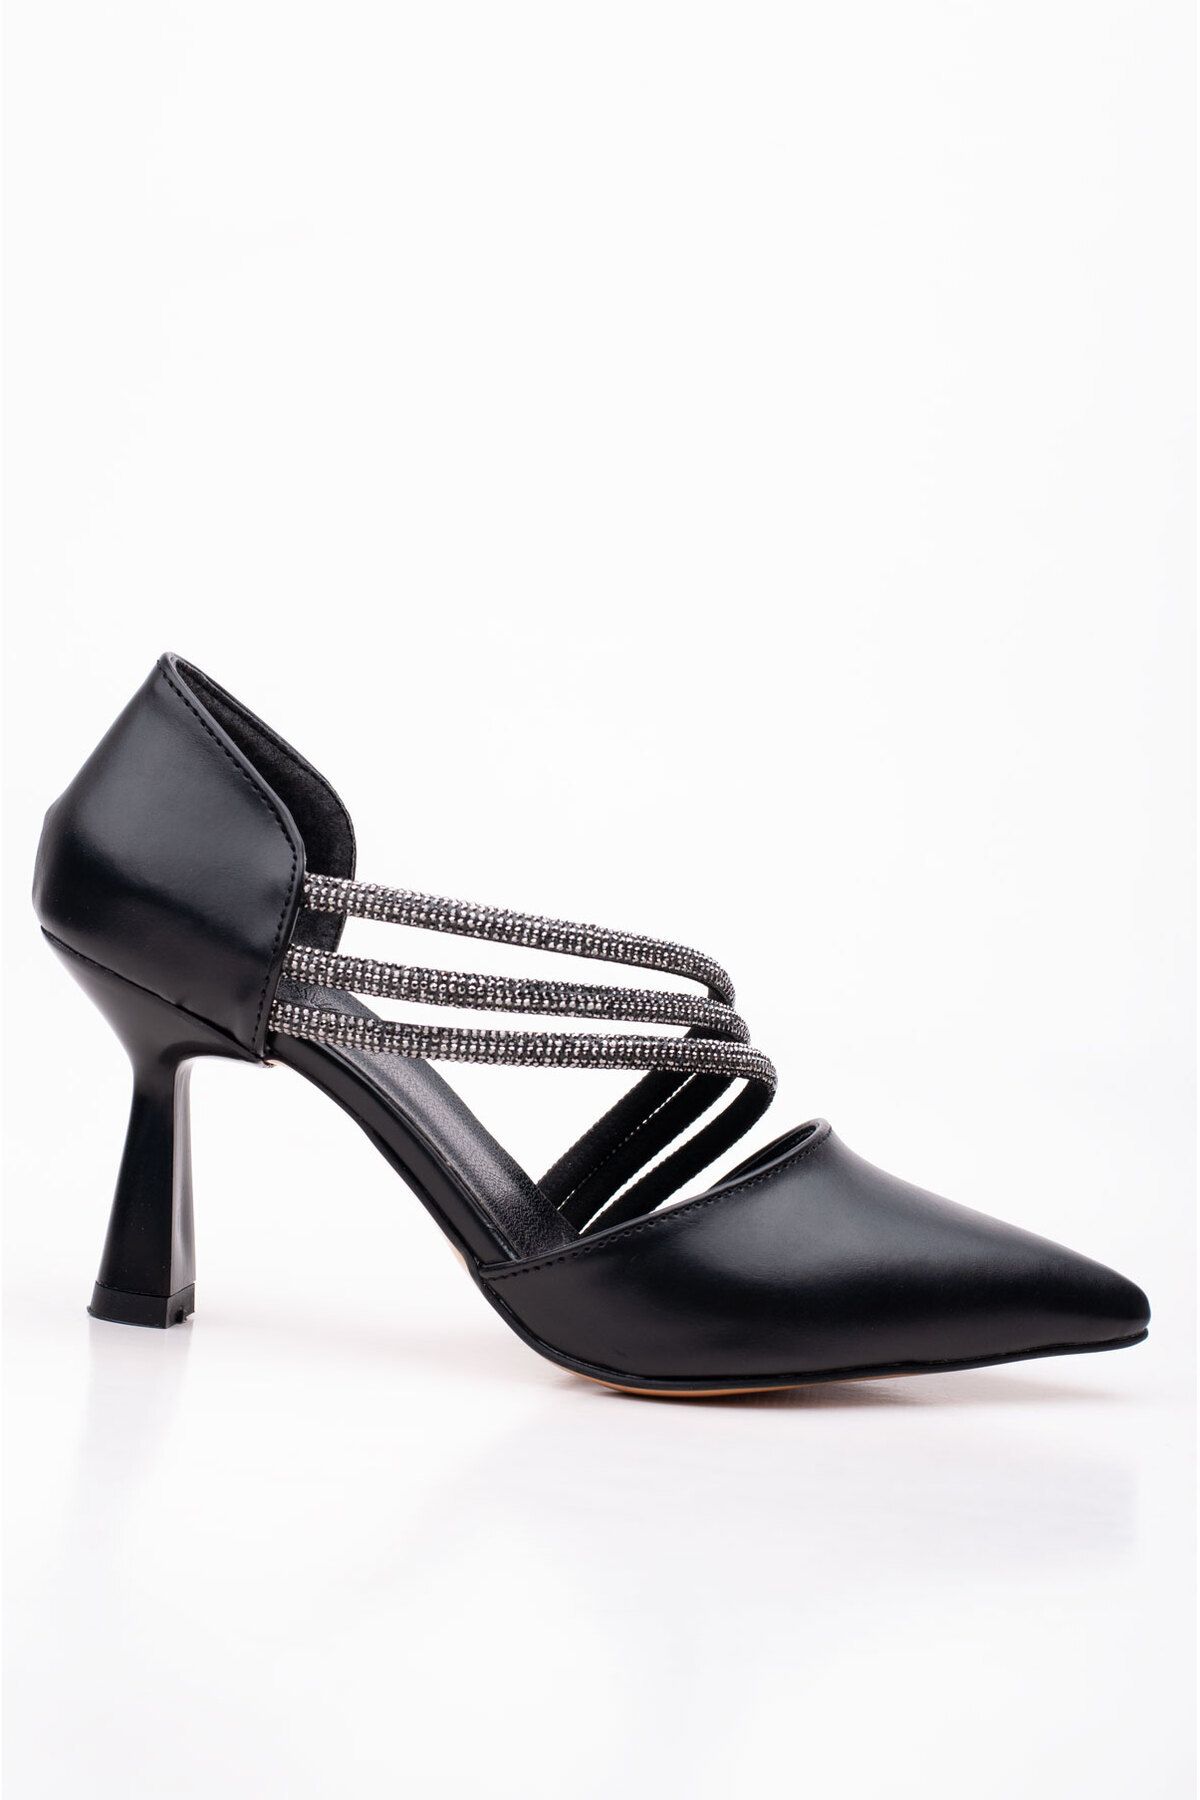 LuisPerry Siyah Renk Düğün Ayakkabısı Taşlı Abiye Ayakkabı Nişan Ayakkabısı 9 Cm Topuklu Ayakkabı